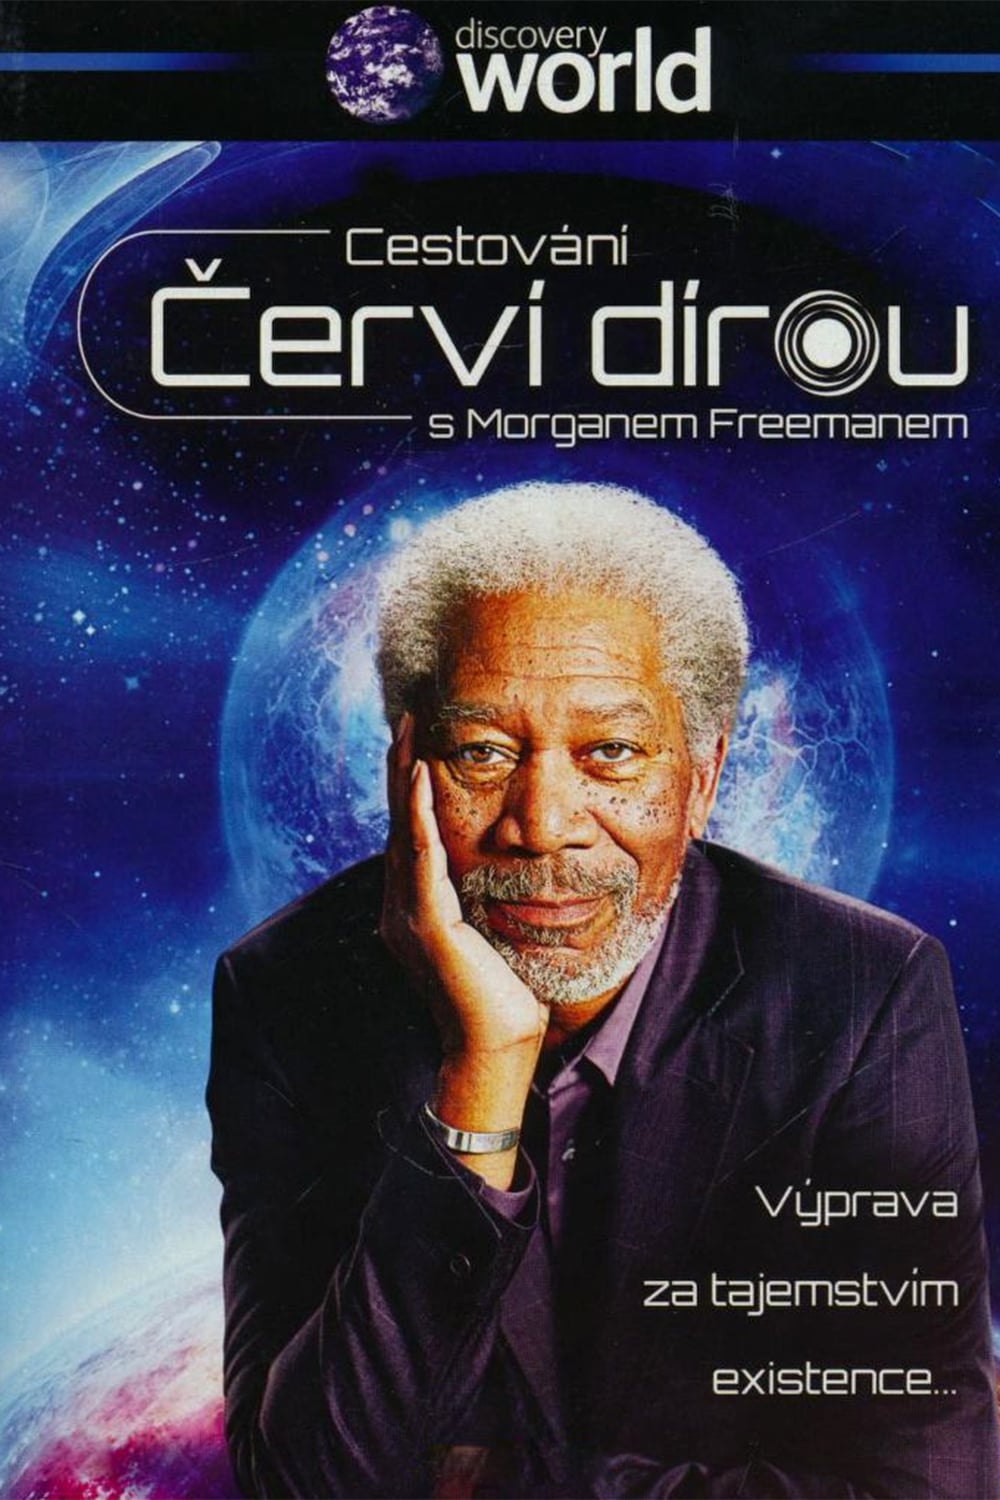 Plakát pro film “Cestování červí dírou s Morganem Freemanem”